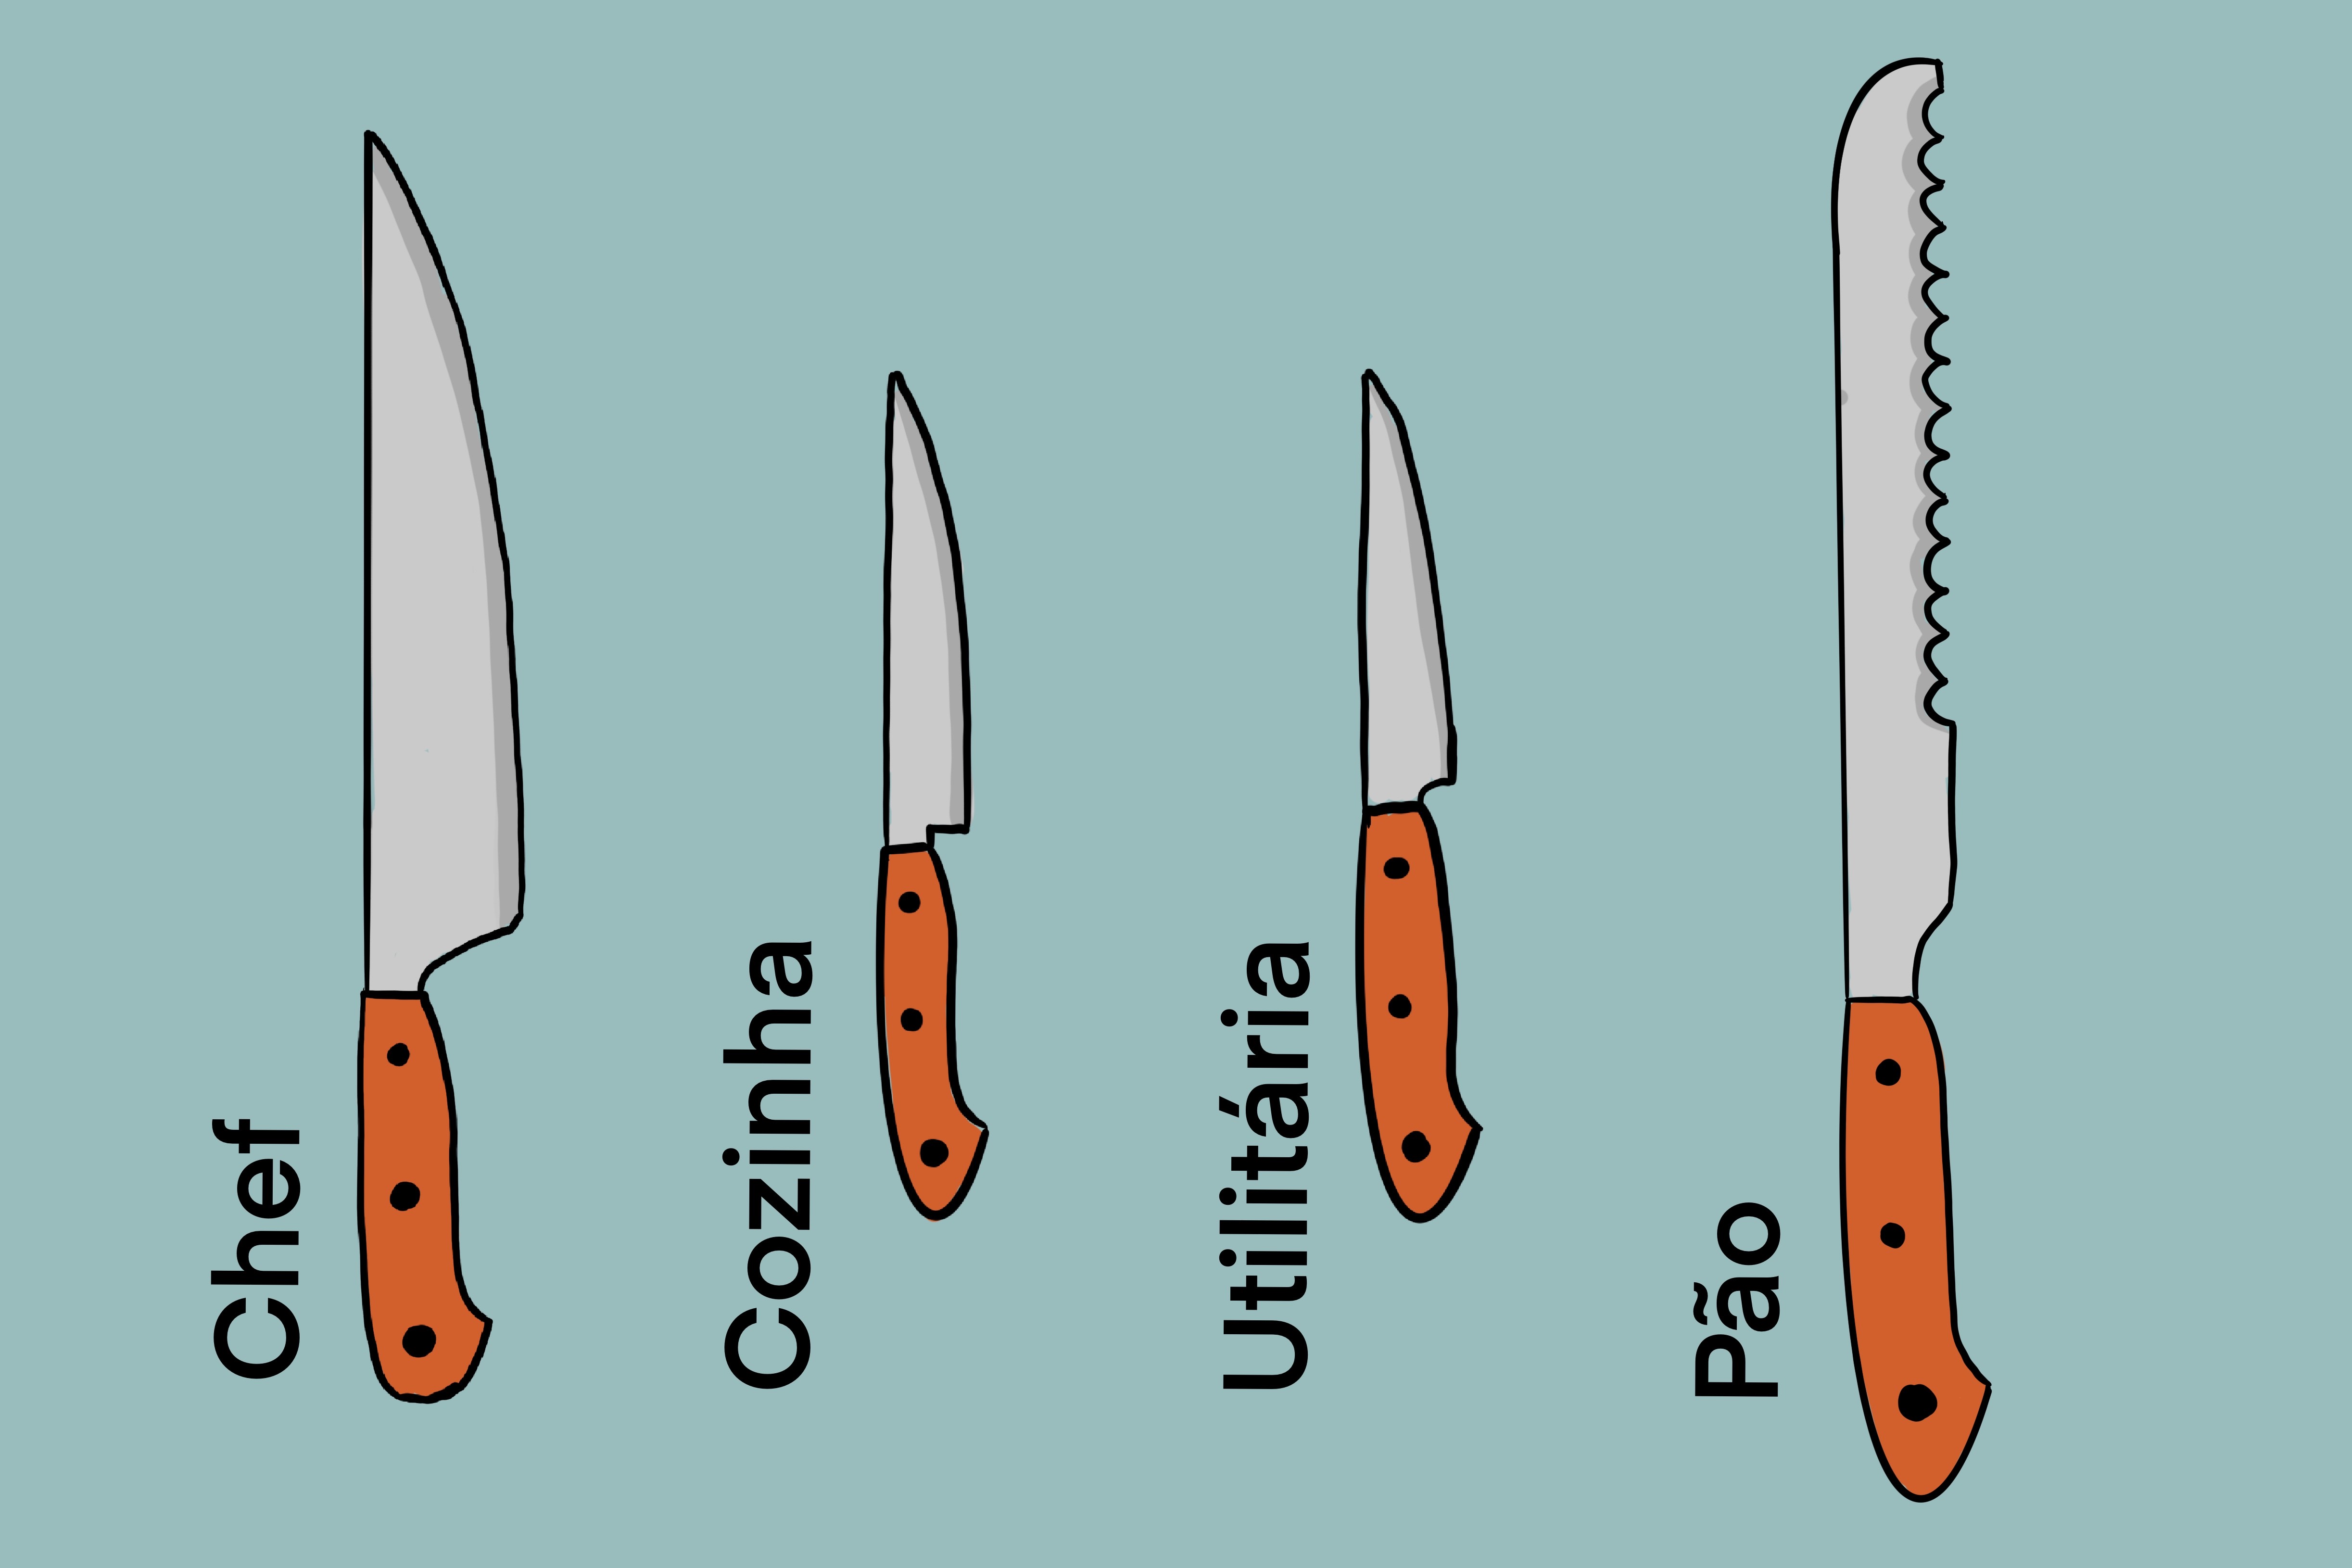 Tipos de facas essenciais na cozinha